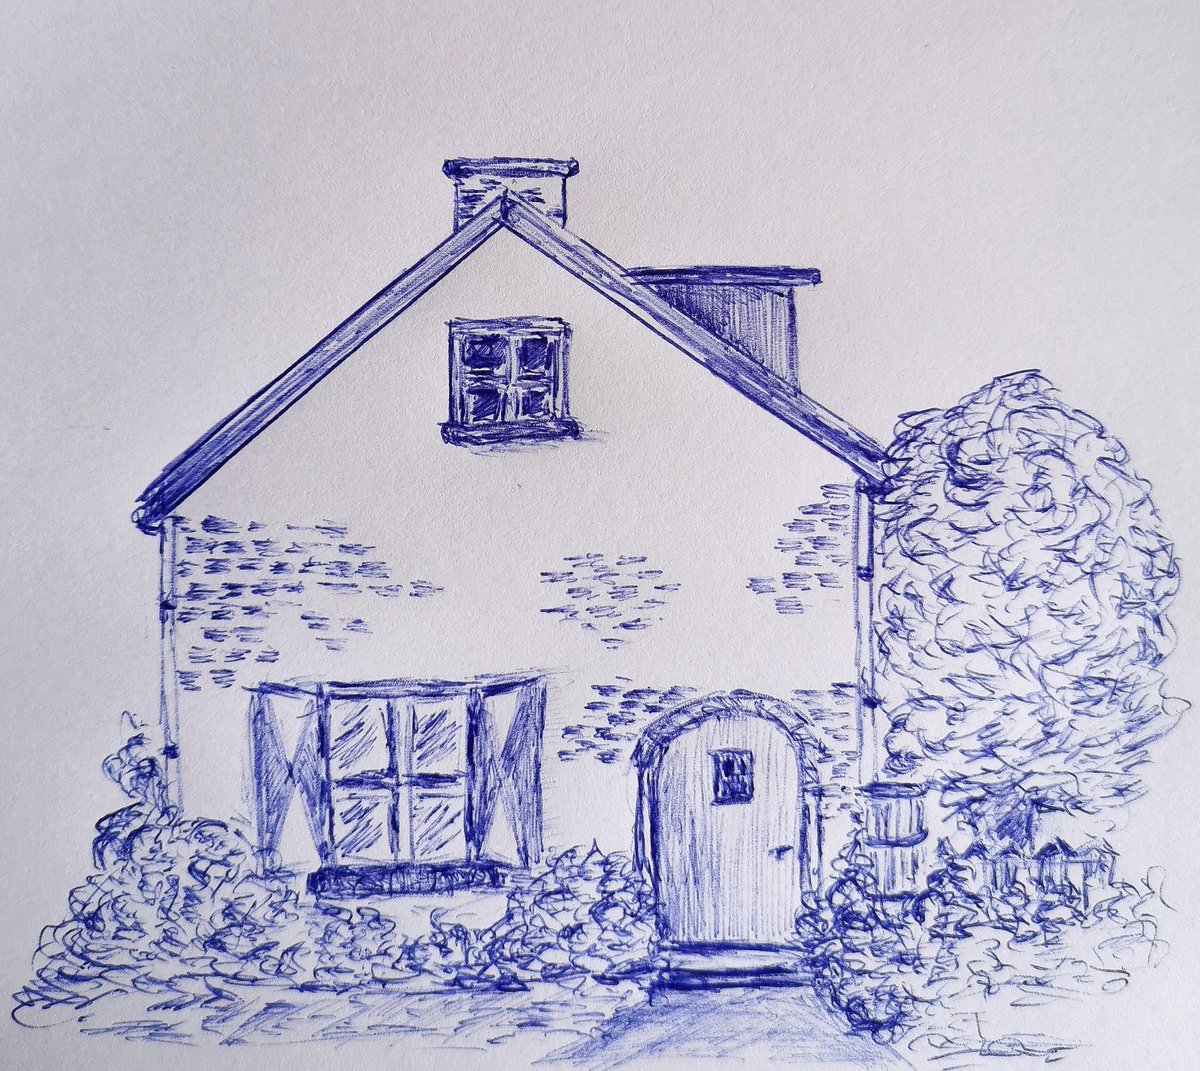 Een huis met een tuintje, even vlug met balpen getekend #sneltekenen #diy #tekenen #illustratie #iktekenmaarwat